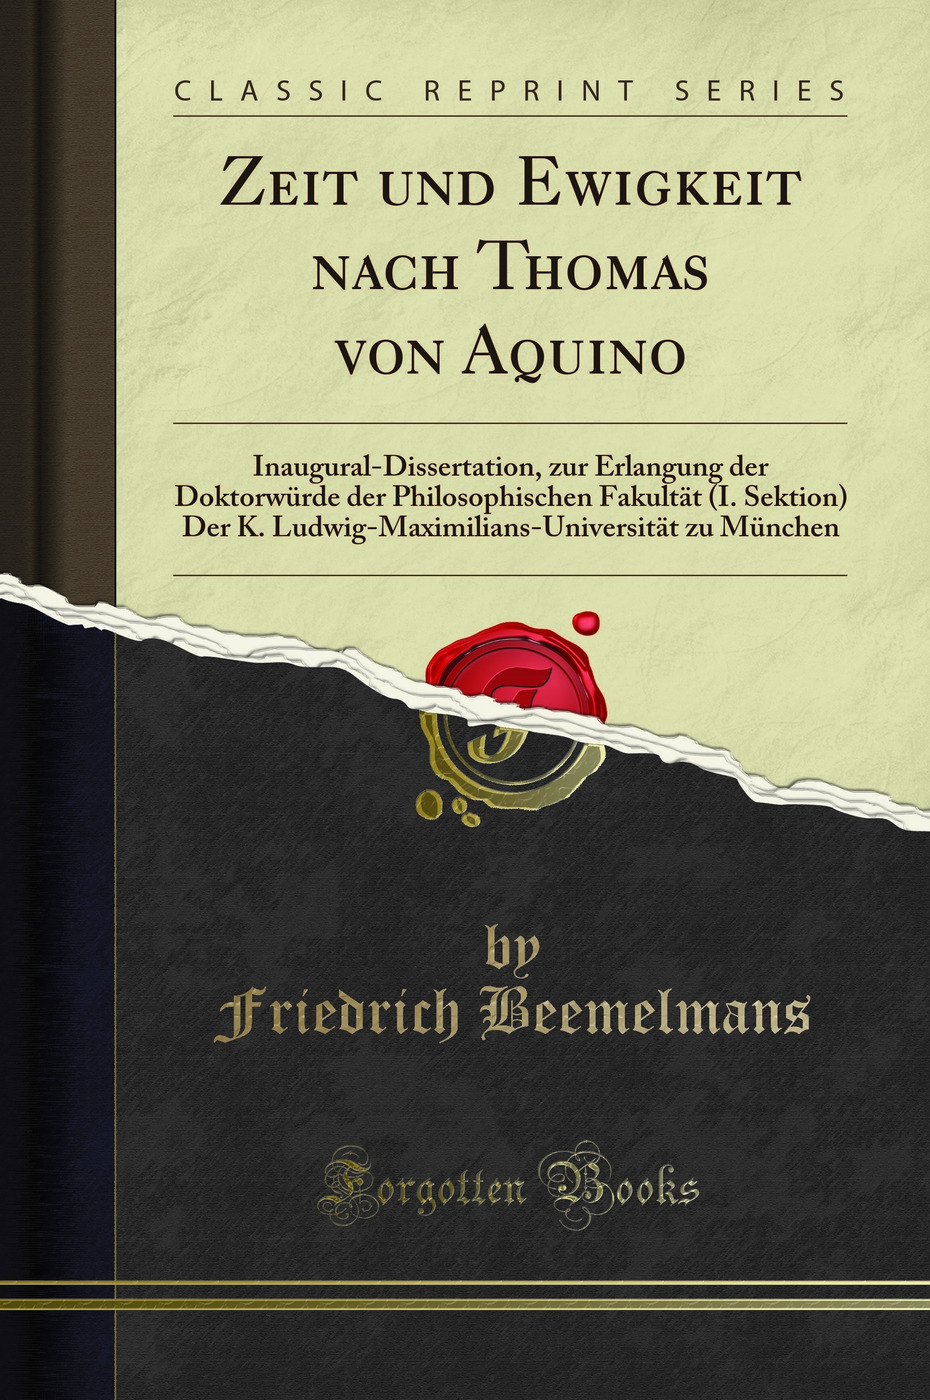 Zeit und Ewigkeit nach Thomas von Aquino: Inaugural-Dissertation - Friedrich Beemelmans